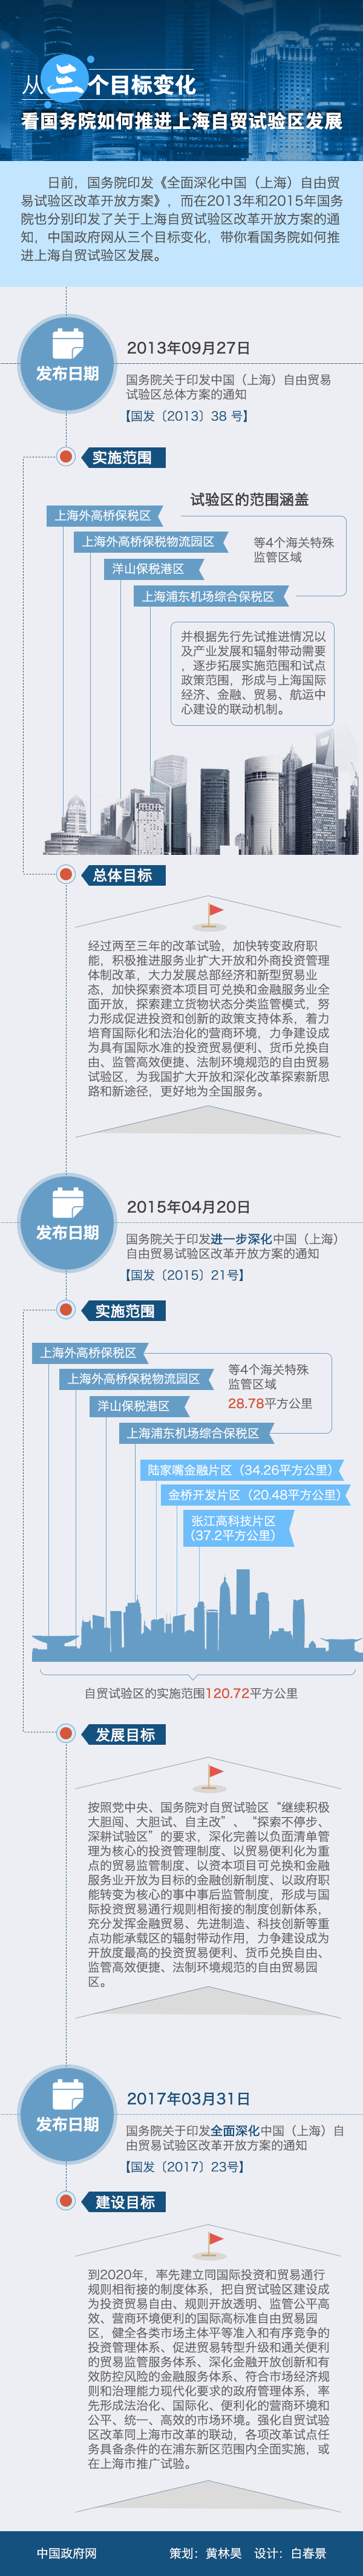 图解：从三个目标变化看国务院如何推进上海自贸试验区发展 策划：黄林昊 设计：白春景